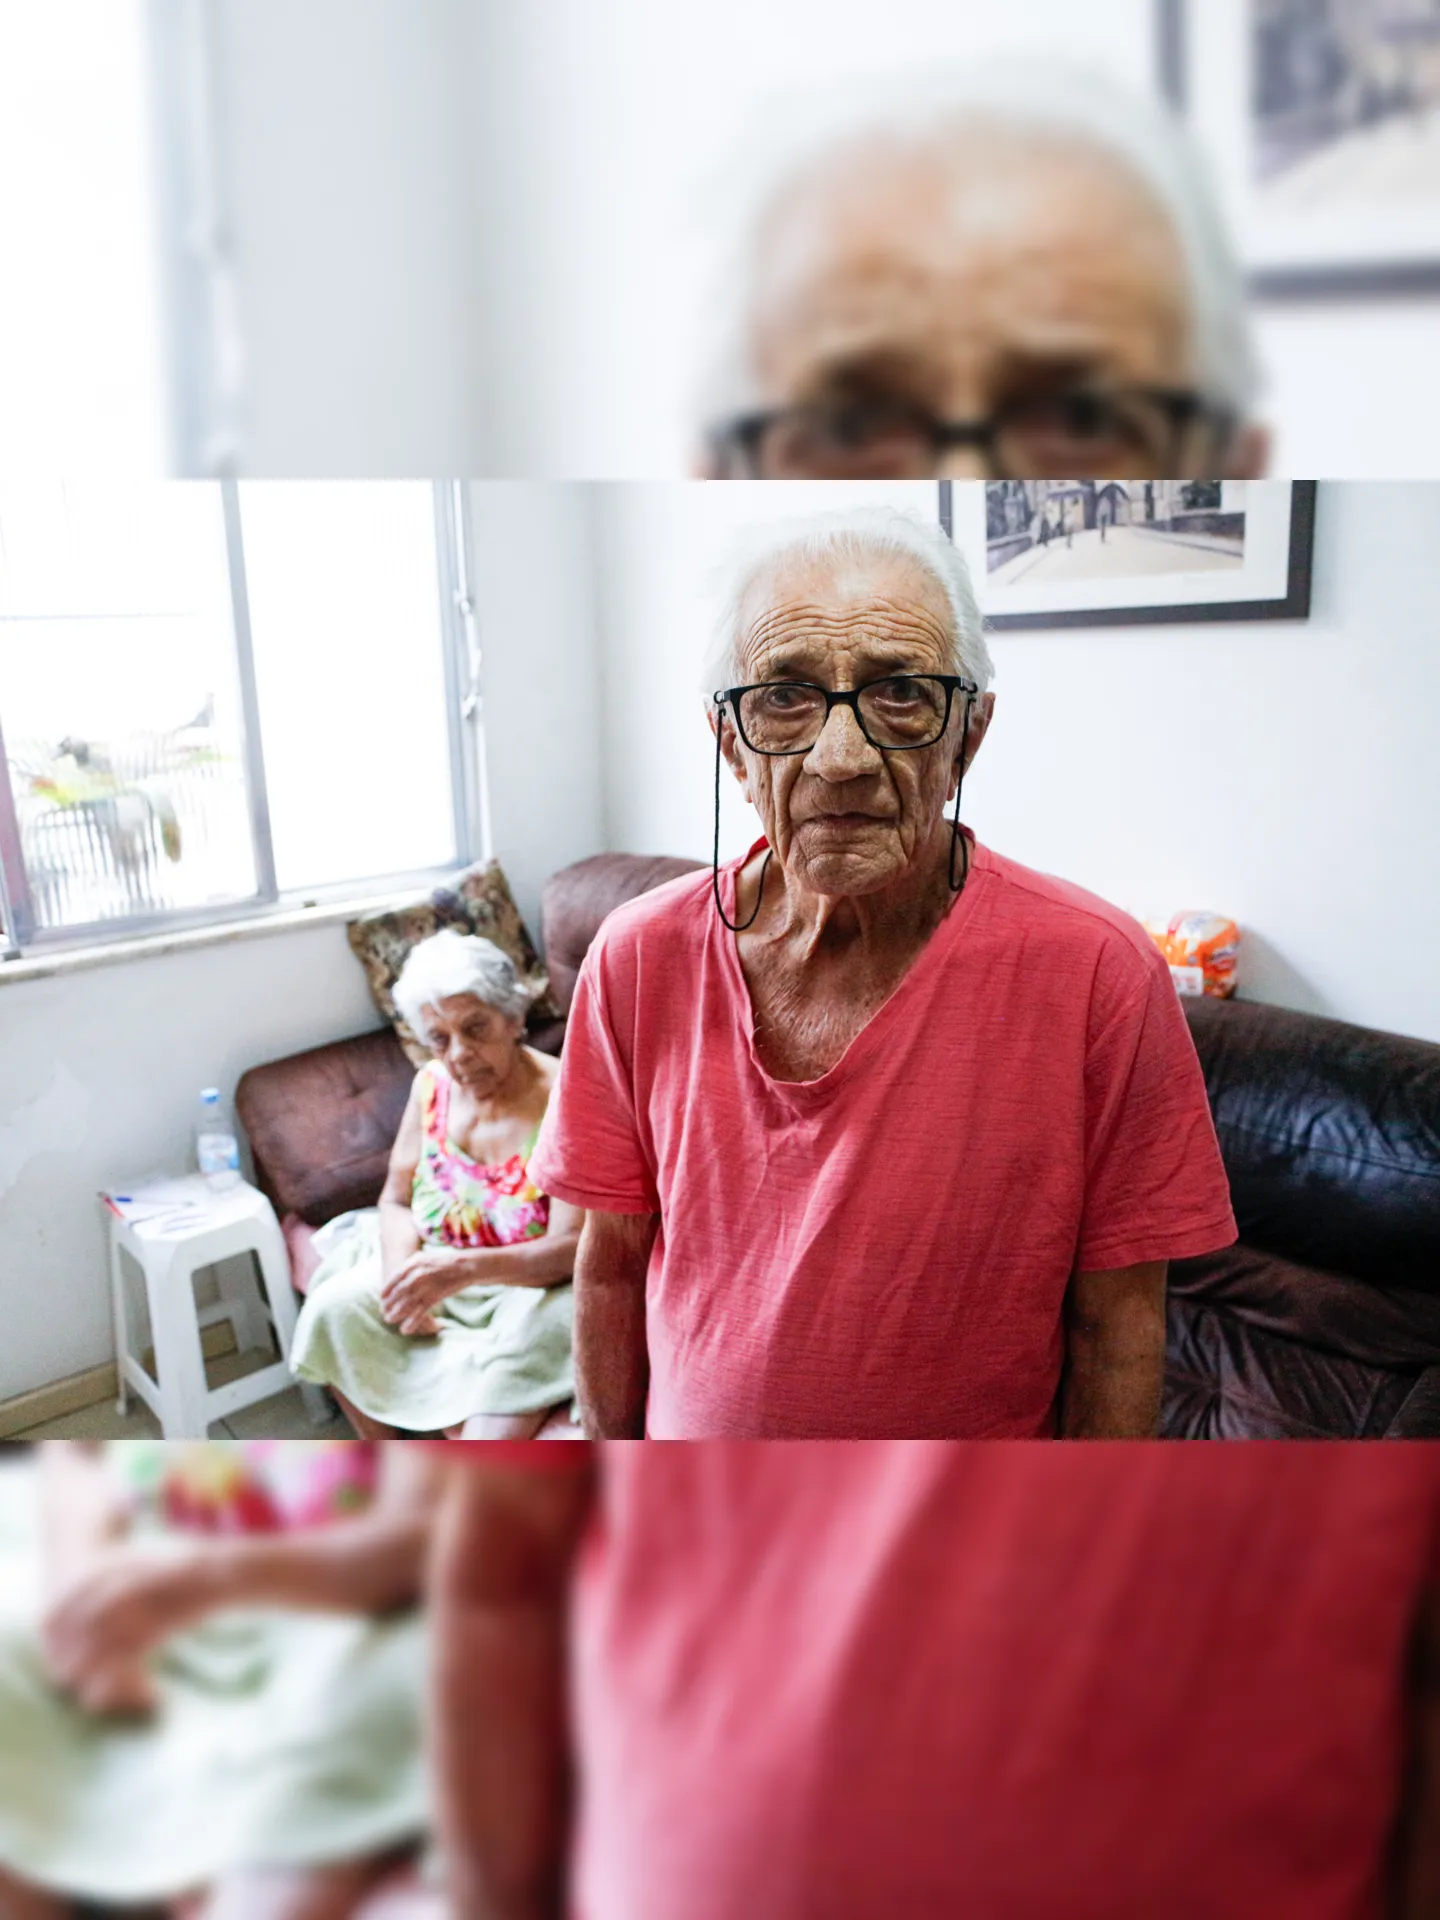 O casal Edymar Muscard, de 80 anos, e Claudio Muscard, de 83, mora no prédio há 10 anos